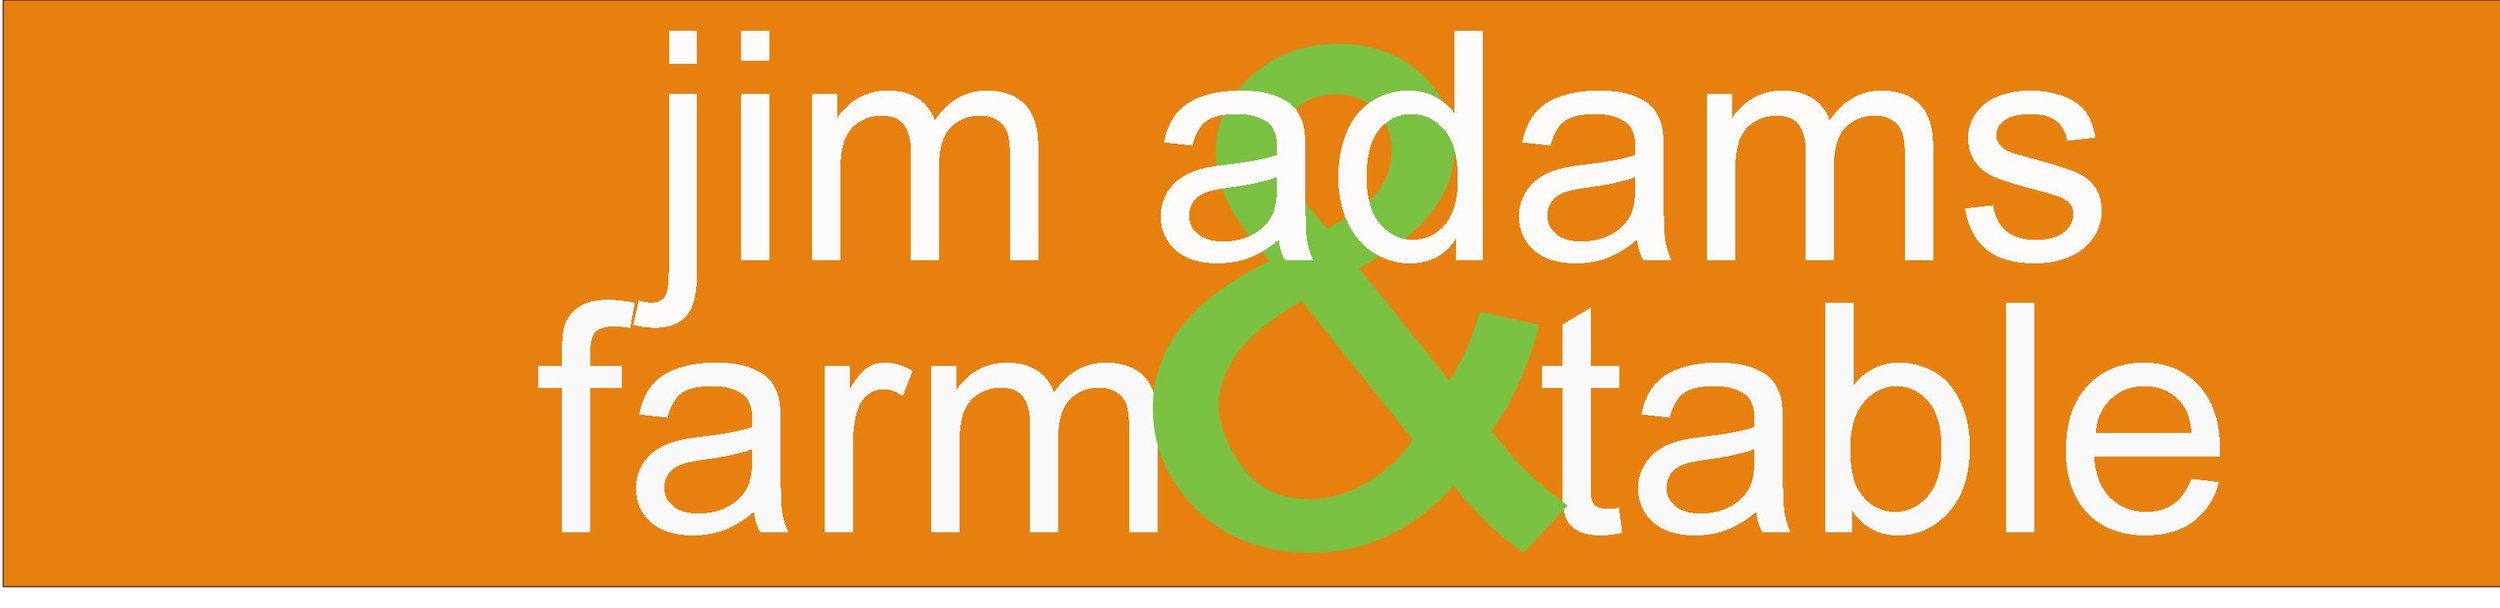 17 jim adams text logo.jpg